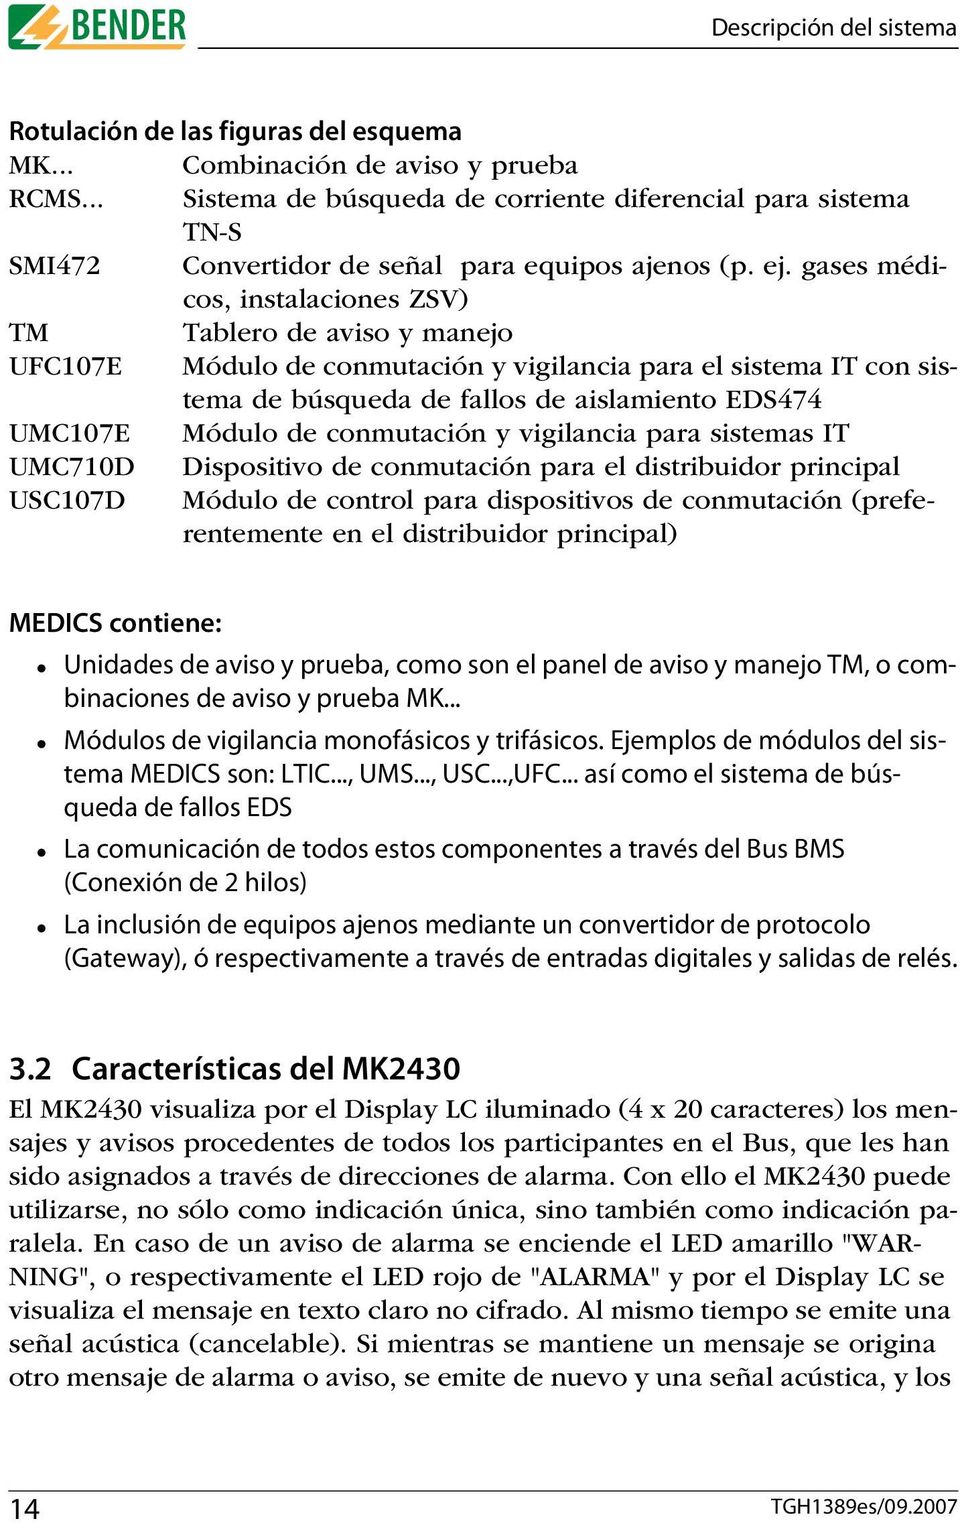 gases médicos, instalaciones ZSV) TM Tablero de aviso y manejo UFC107E Módulo de conmutación y vigilancia para el sistema IT con sistema de búsqueda de fallos de aislamiento EDS474 UMC107E Módulo de